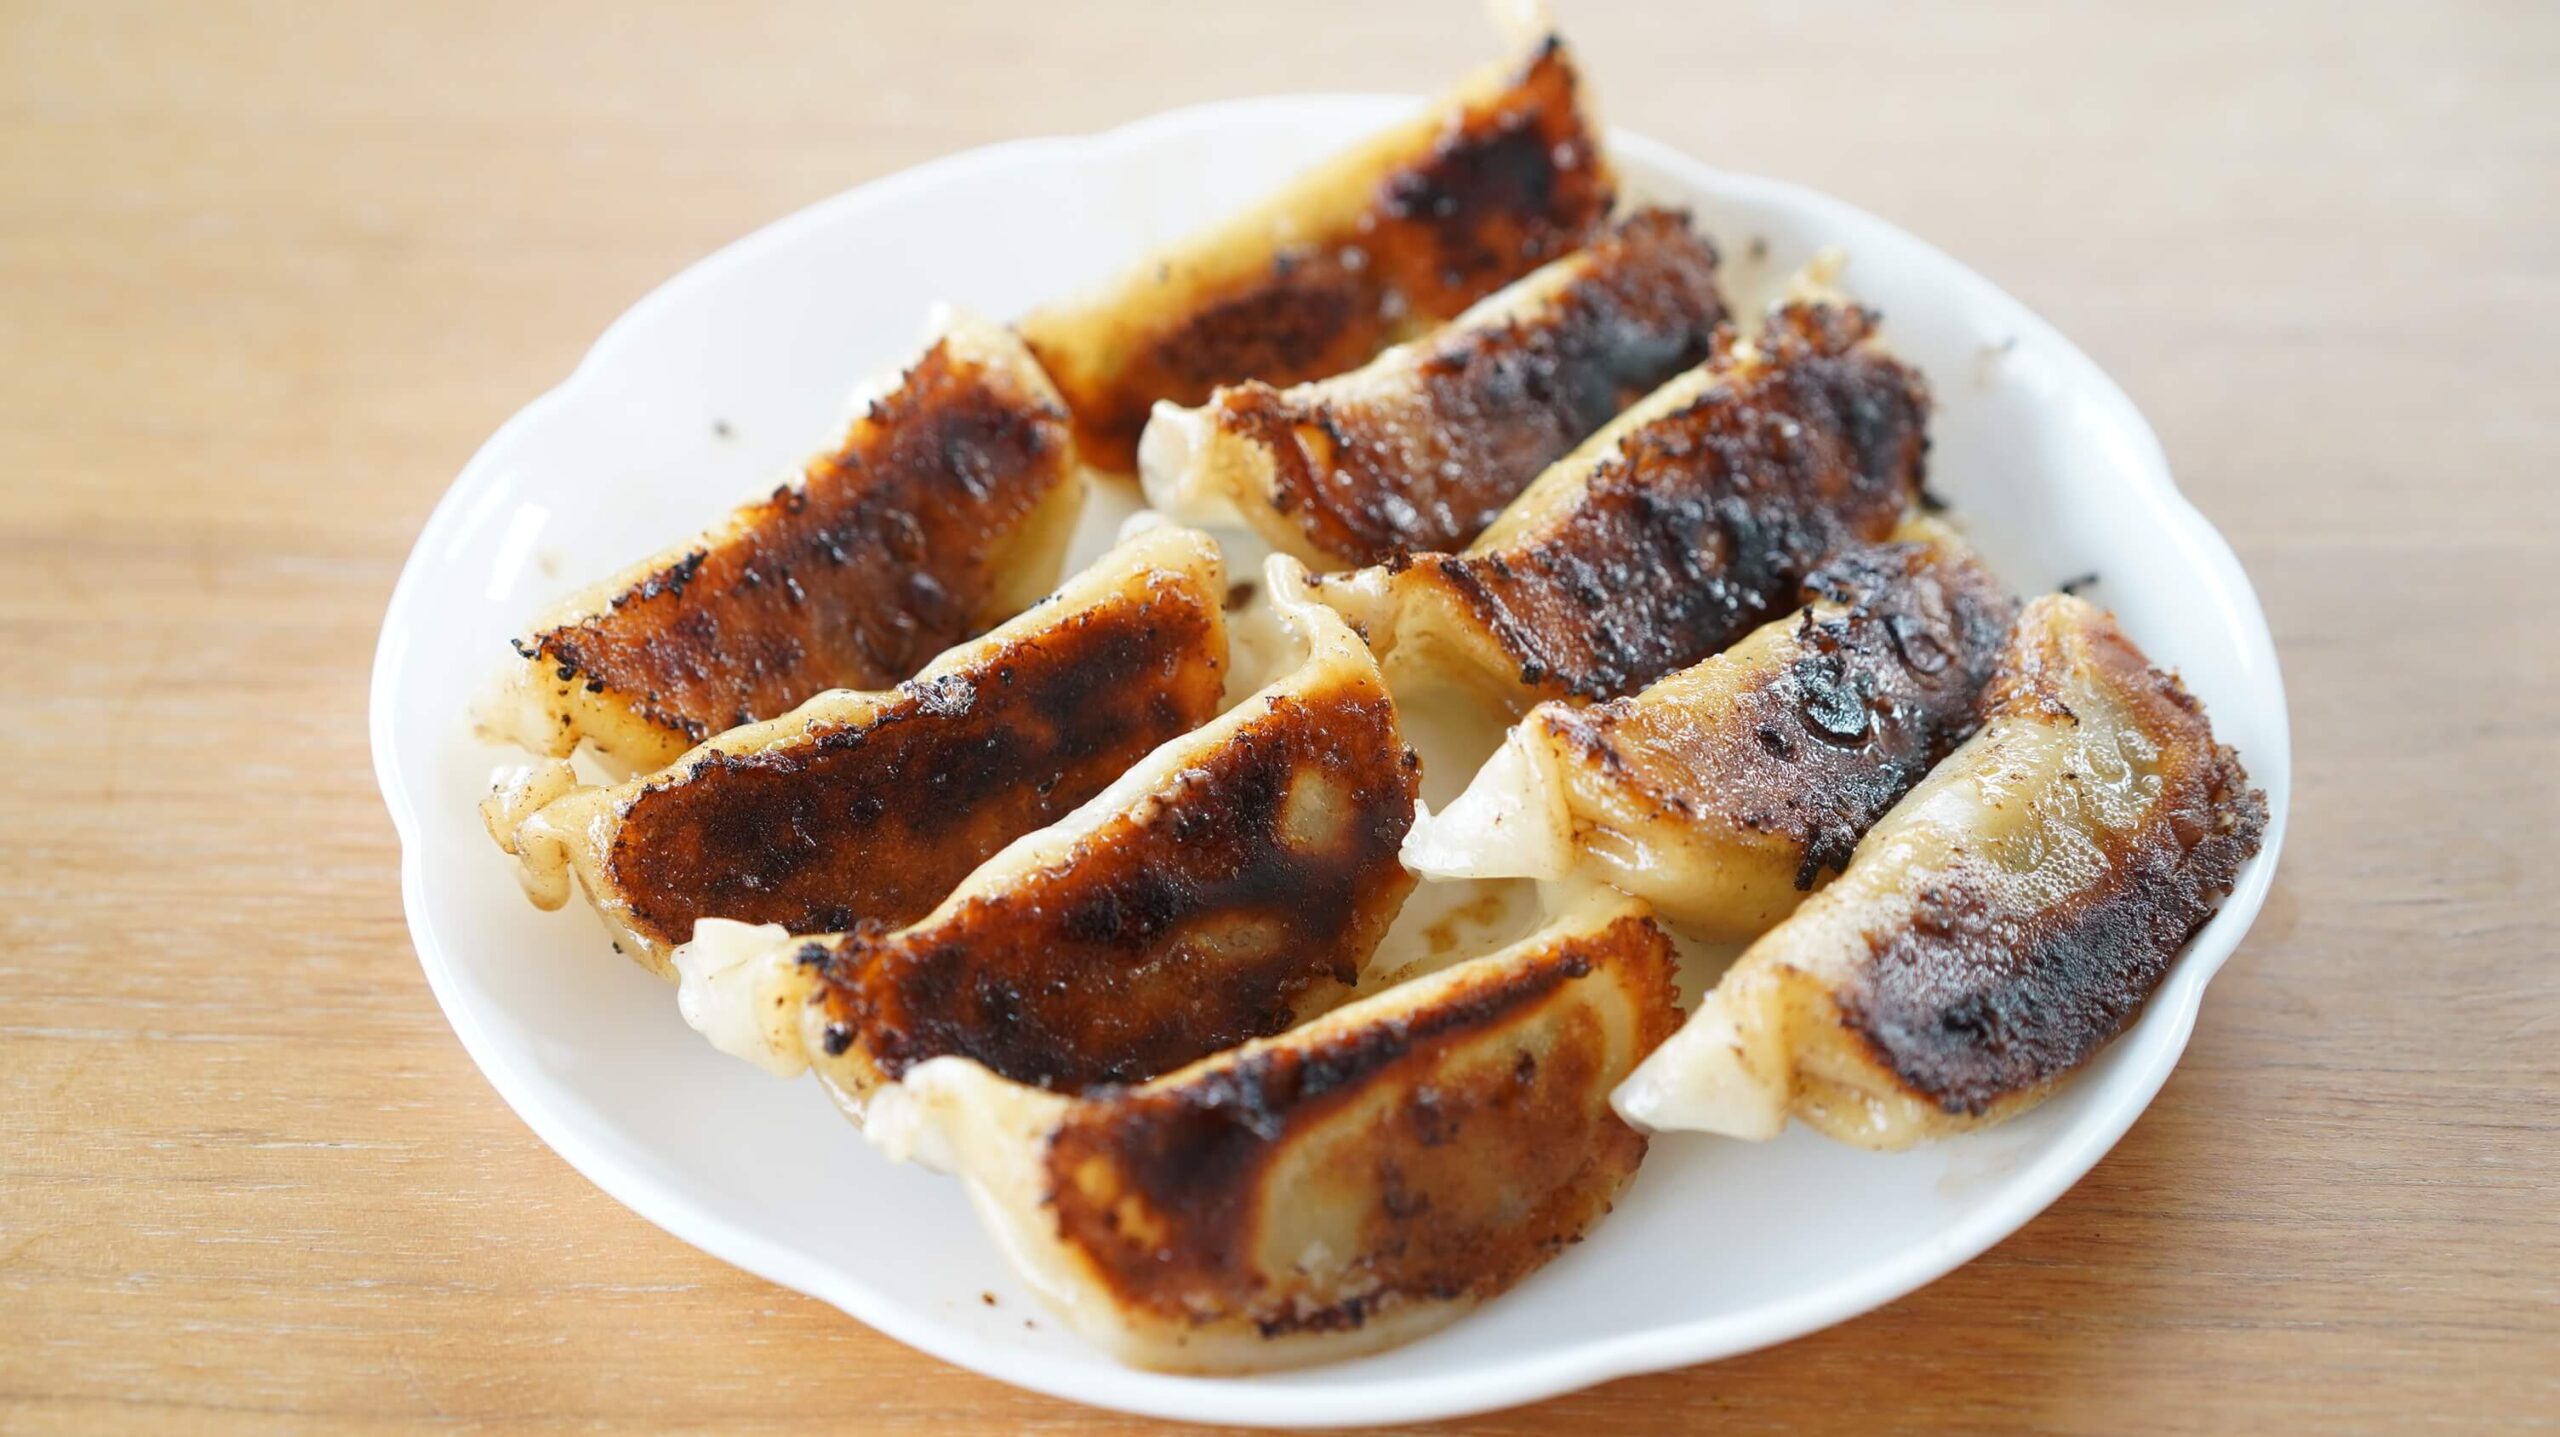 味の素の冷凍食品「黒豚肉餃子」を焼いて皿に盛りつけた写真